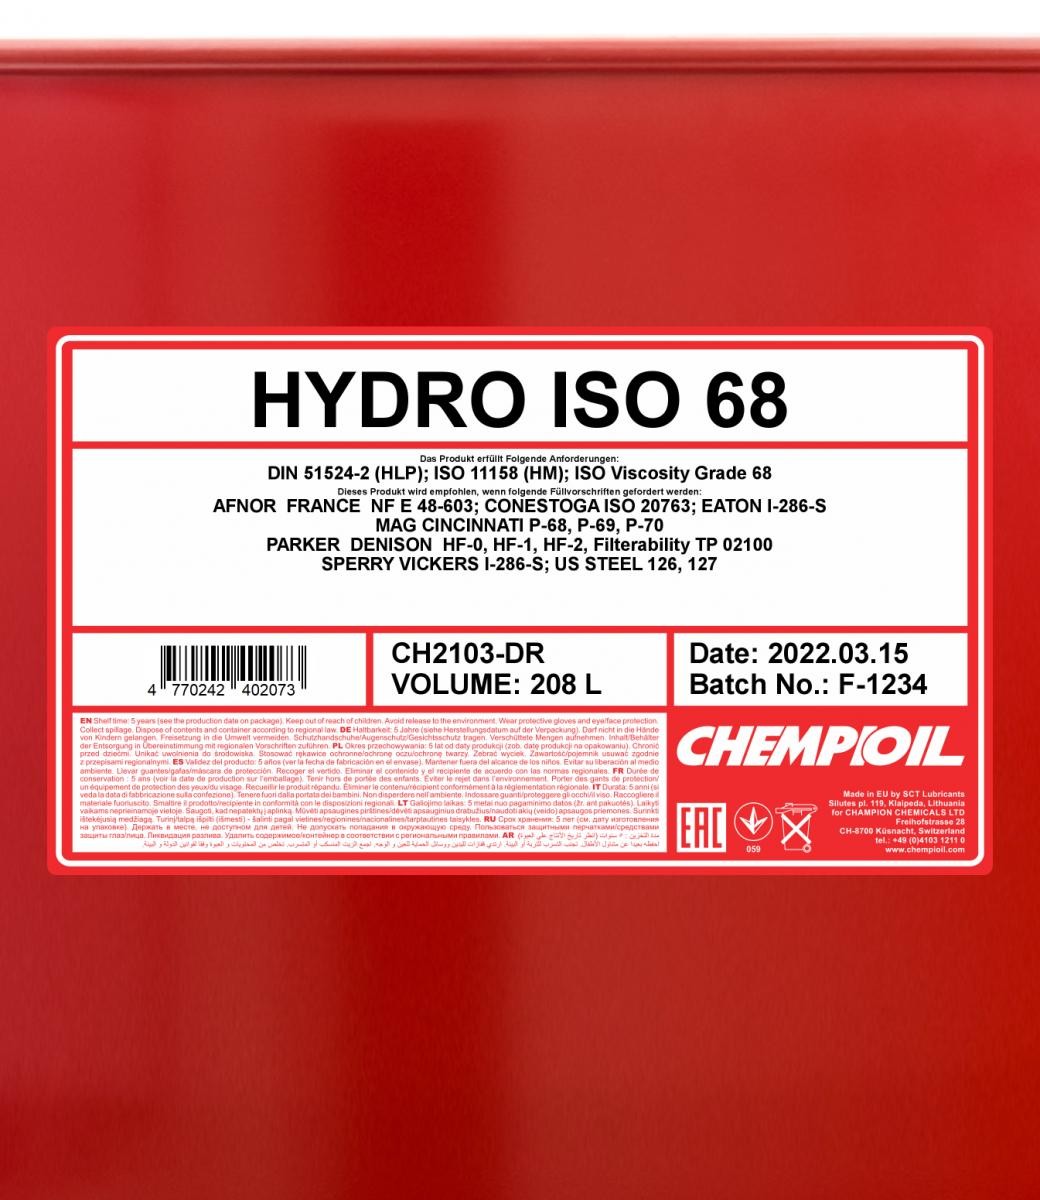 CHEMPIOIL Hydrauliköl CH2103-DR